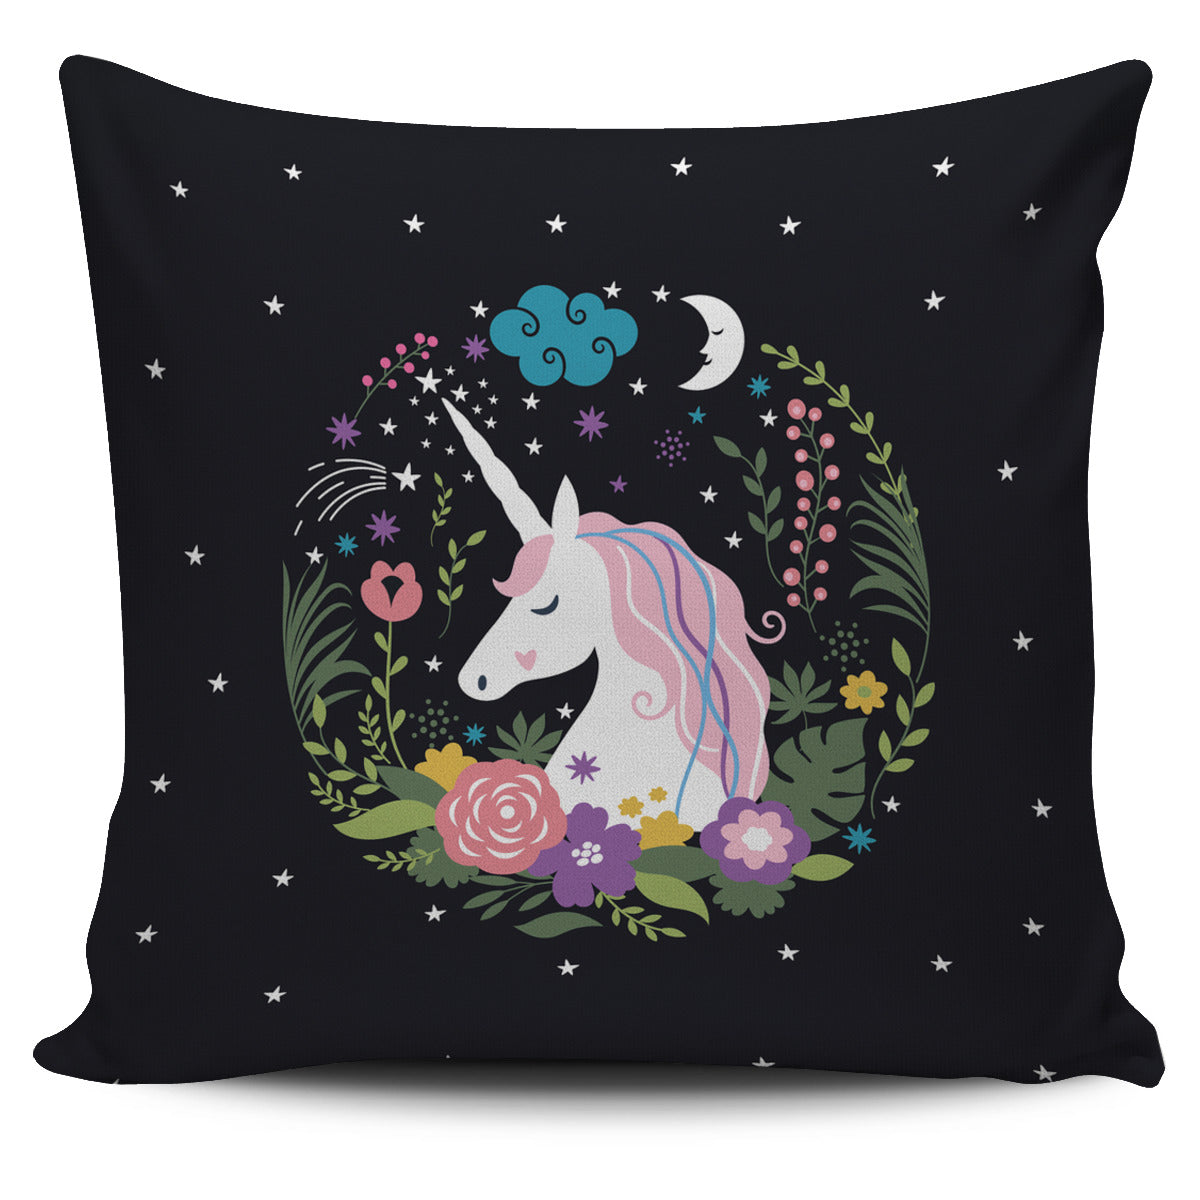 Unicorn Dreams Pillow Cover